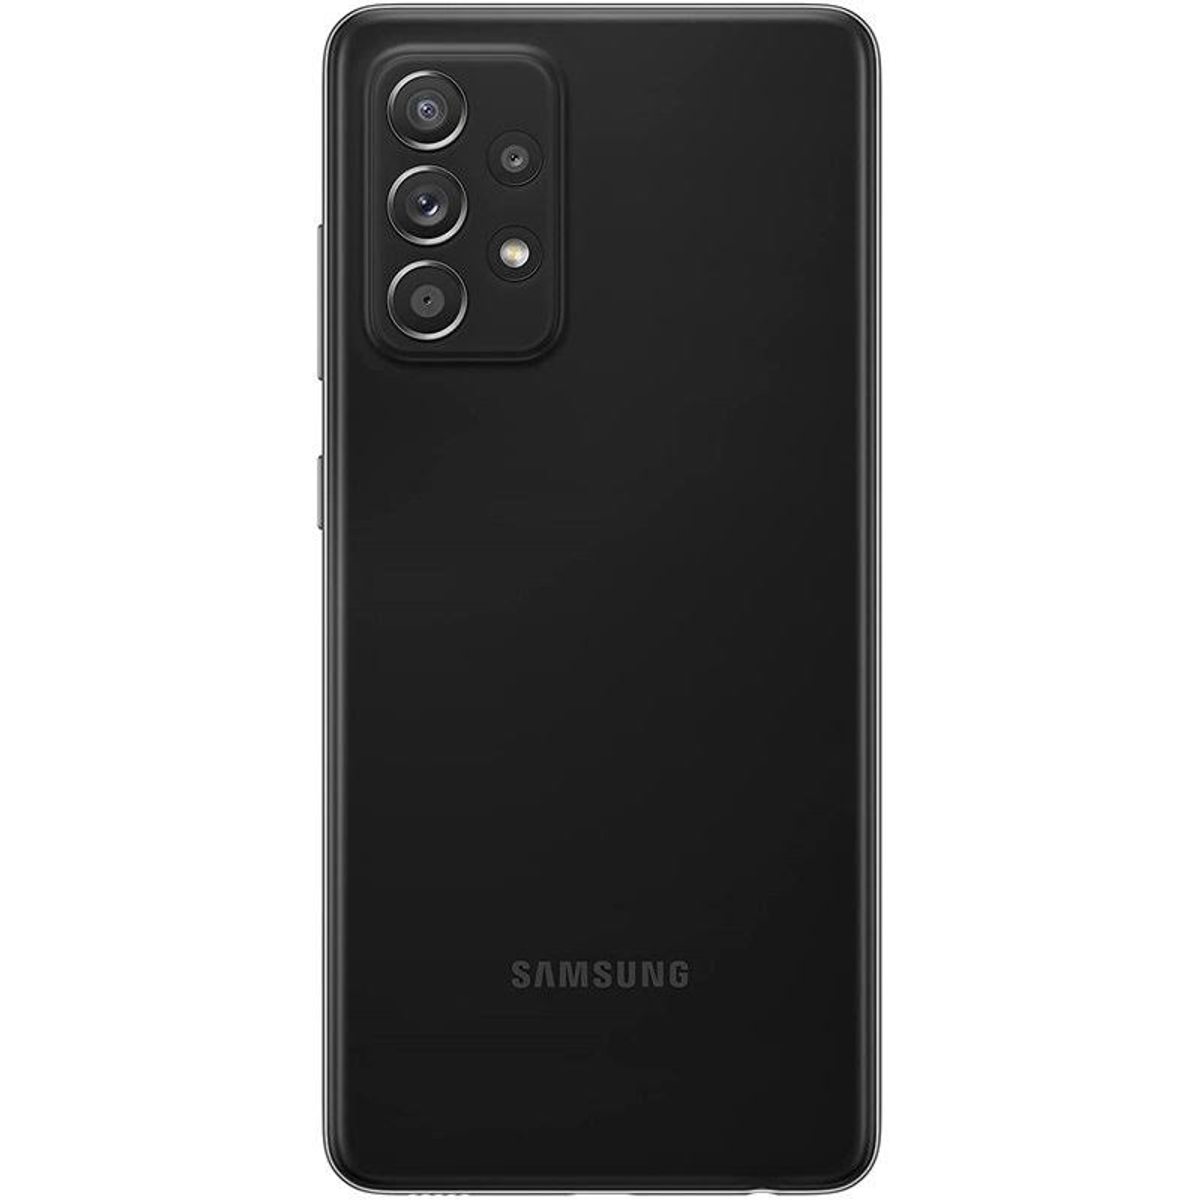 SAMSUNG GB Awesome A52S BLACK Black EE 128 128GB 5G Dual SIM GALAXY